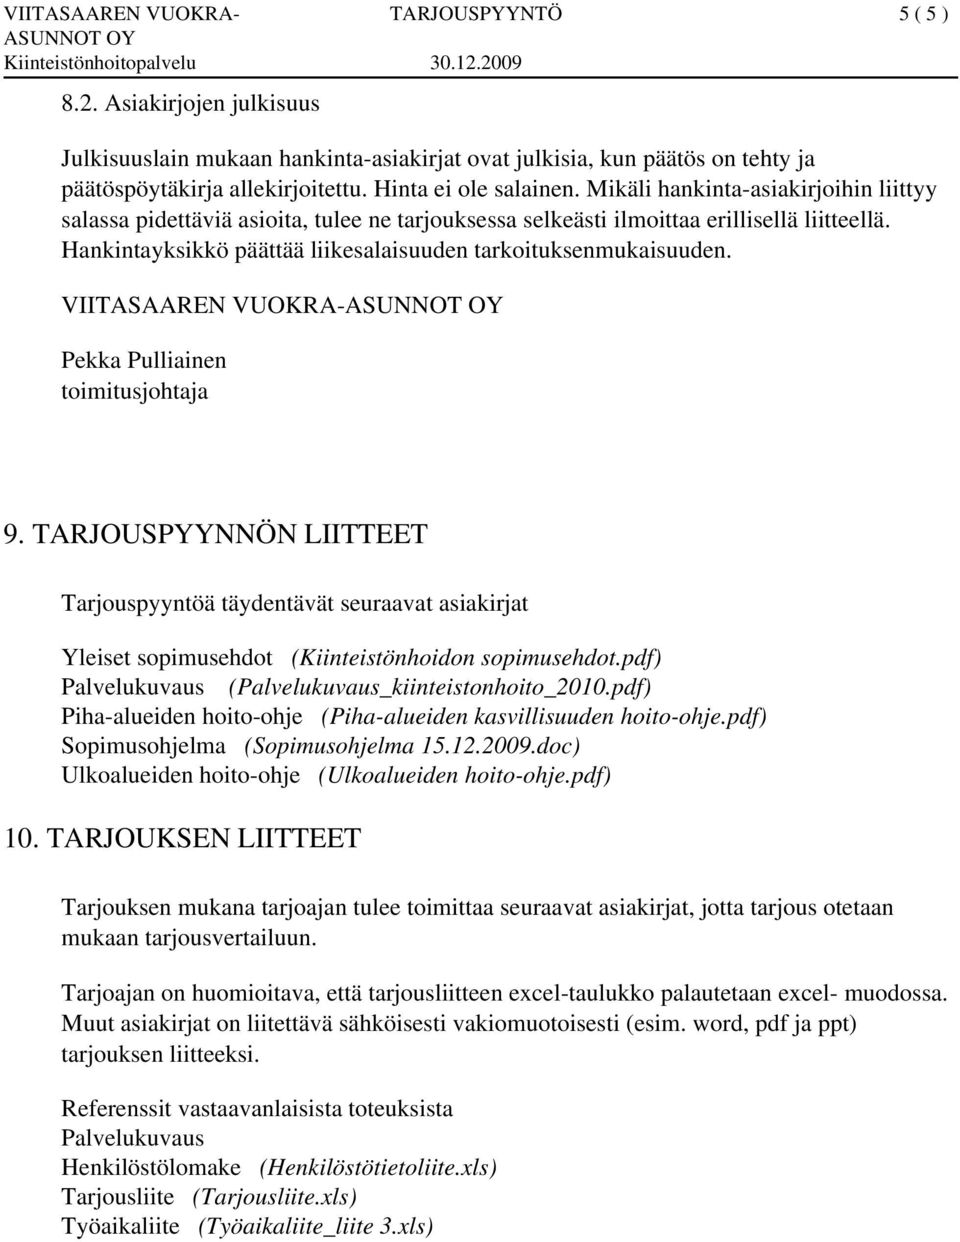 VIITASAAREN VUOKRA- Pekka Pulliainen toimitusjohtaja 9. TARJOUSPYYNNÖN LIITTEET Tarjouspyyntöä täydentävät seuraavat asiakirjat Yleiset sopimusehdot (Kiinteistönhoidon sopimusehdot.